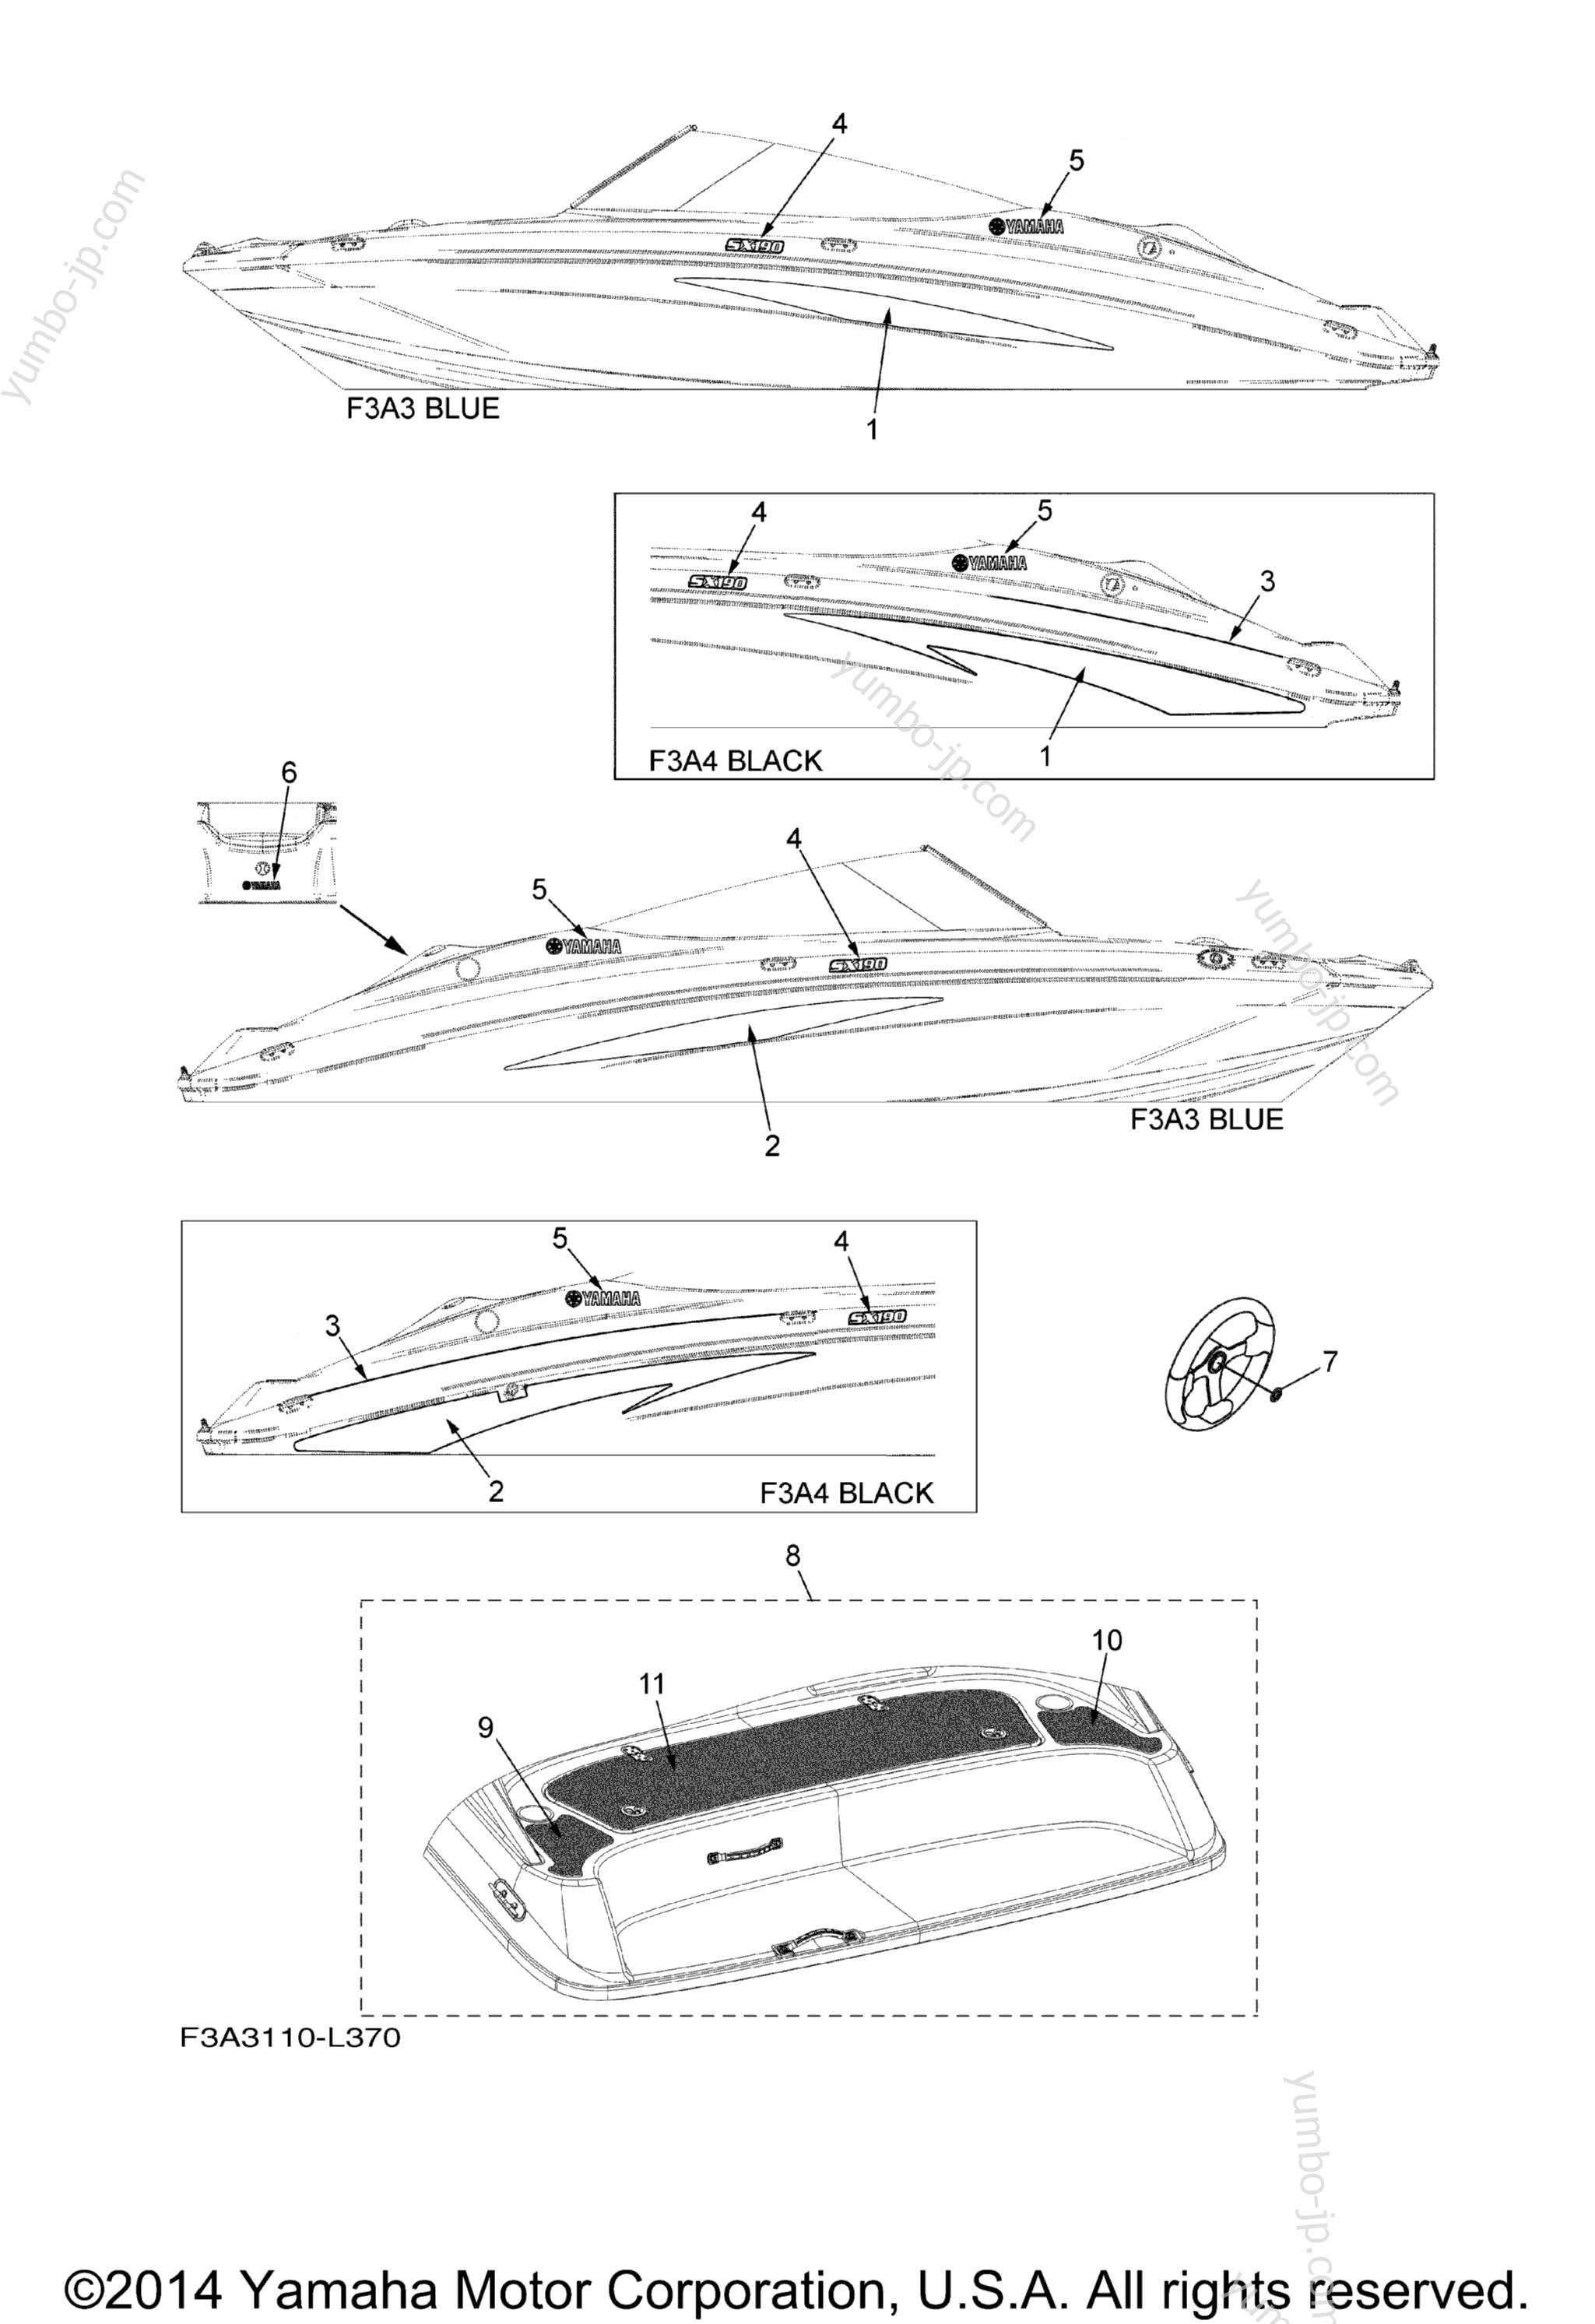 Graphics & Mats для катеров YAMAHA SX190 (RX1800CL) 2012 г.